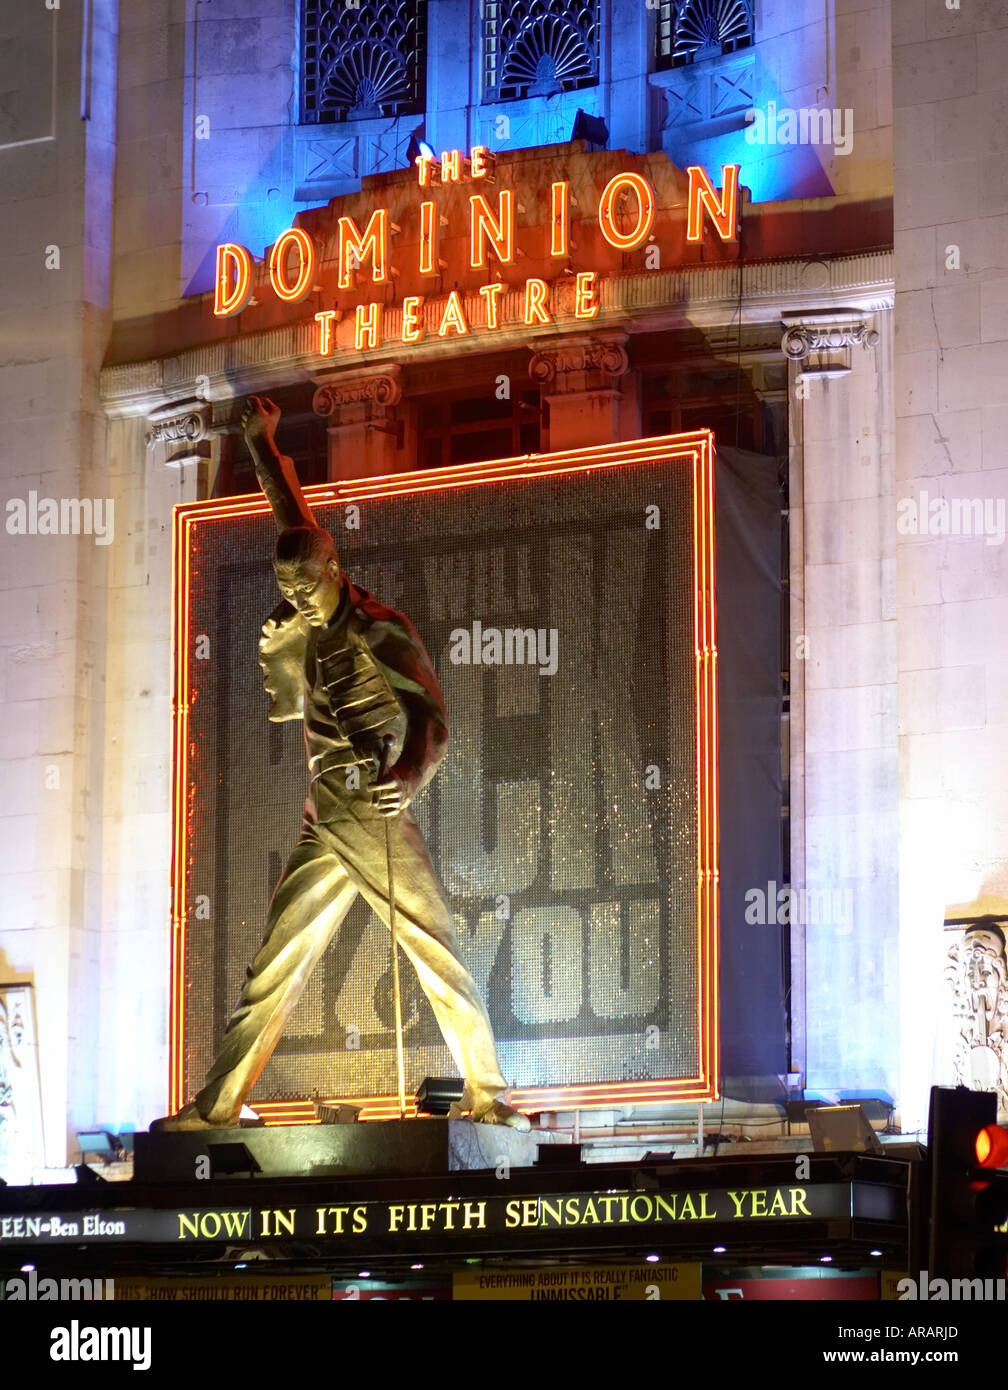 Dominion Theatre in London REGNO UNITO Foto Stock